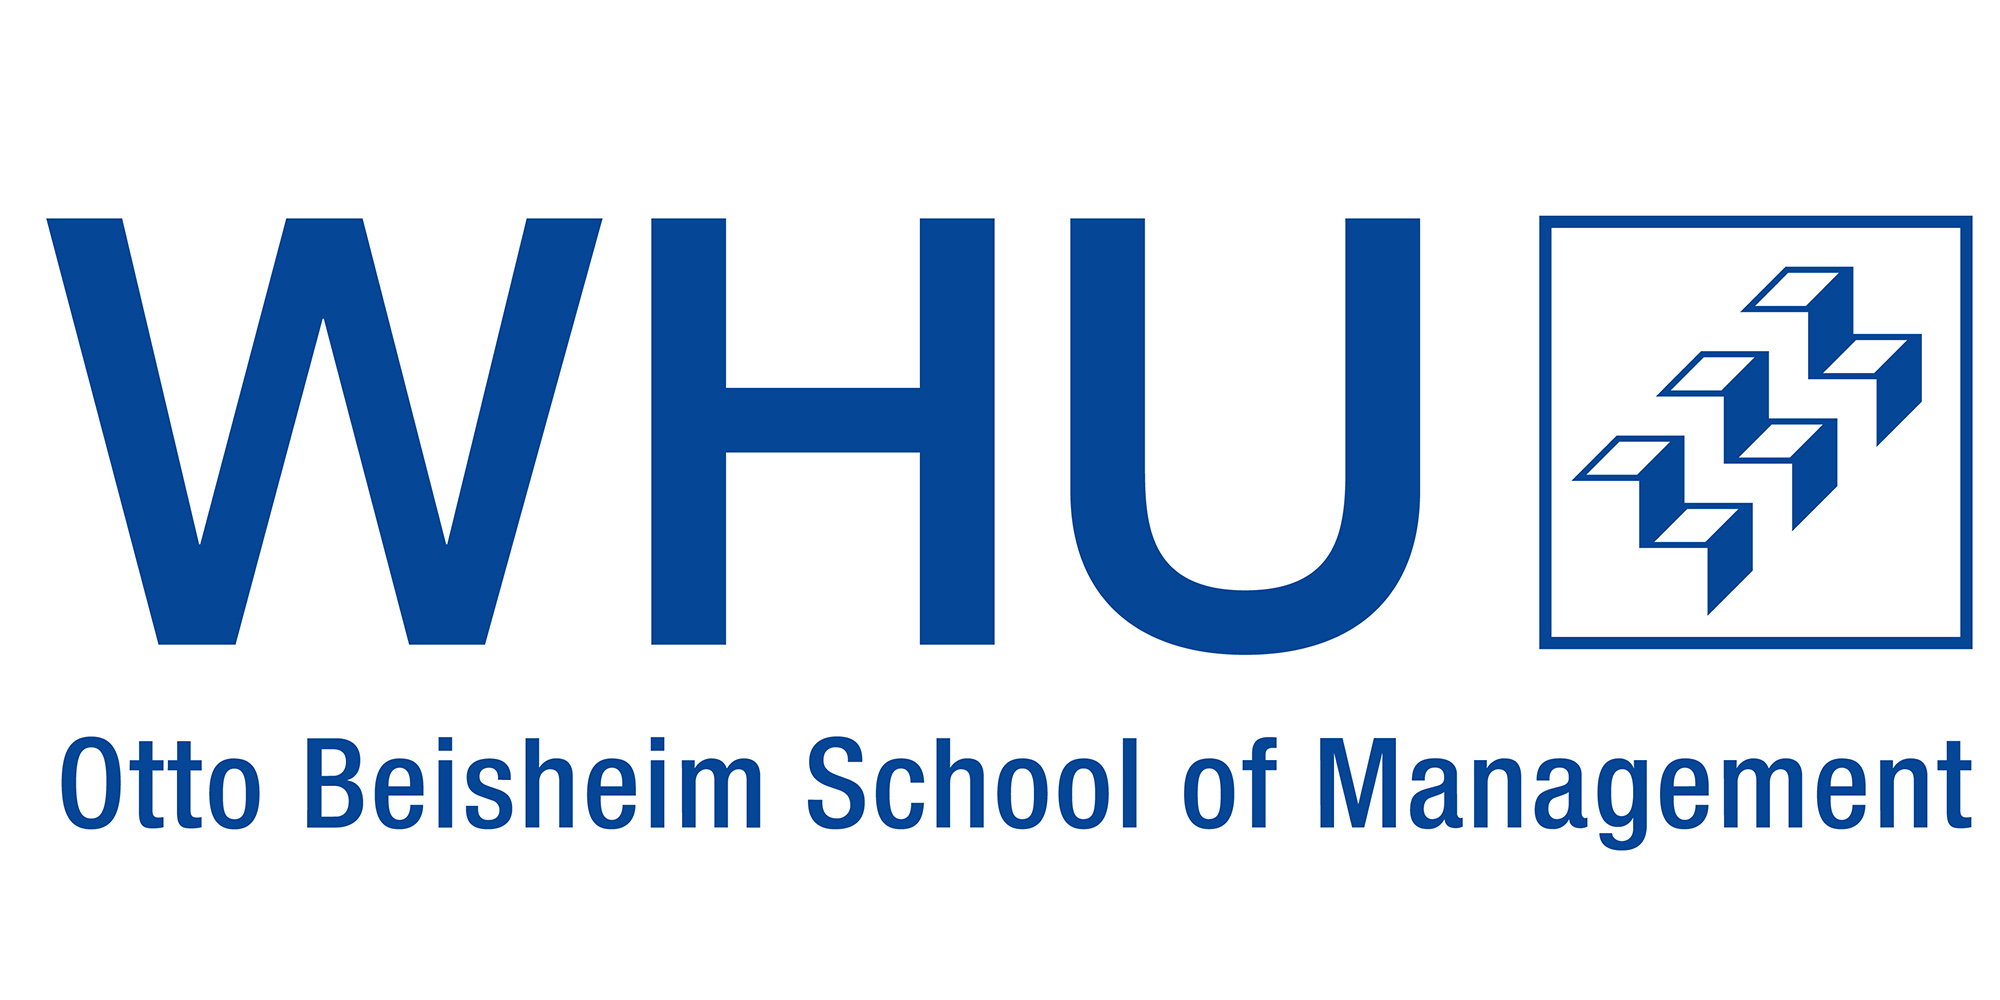 Größte Chancen auf DAX-Vorstandskarriere für WHU-Alumni